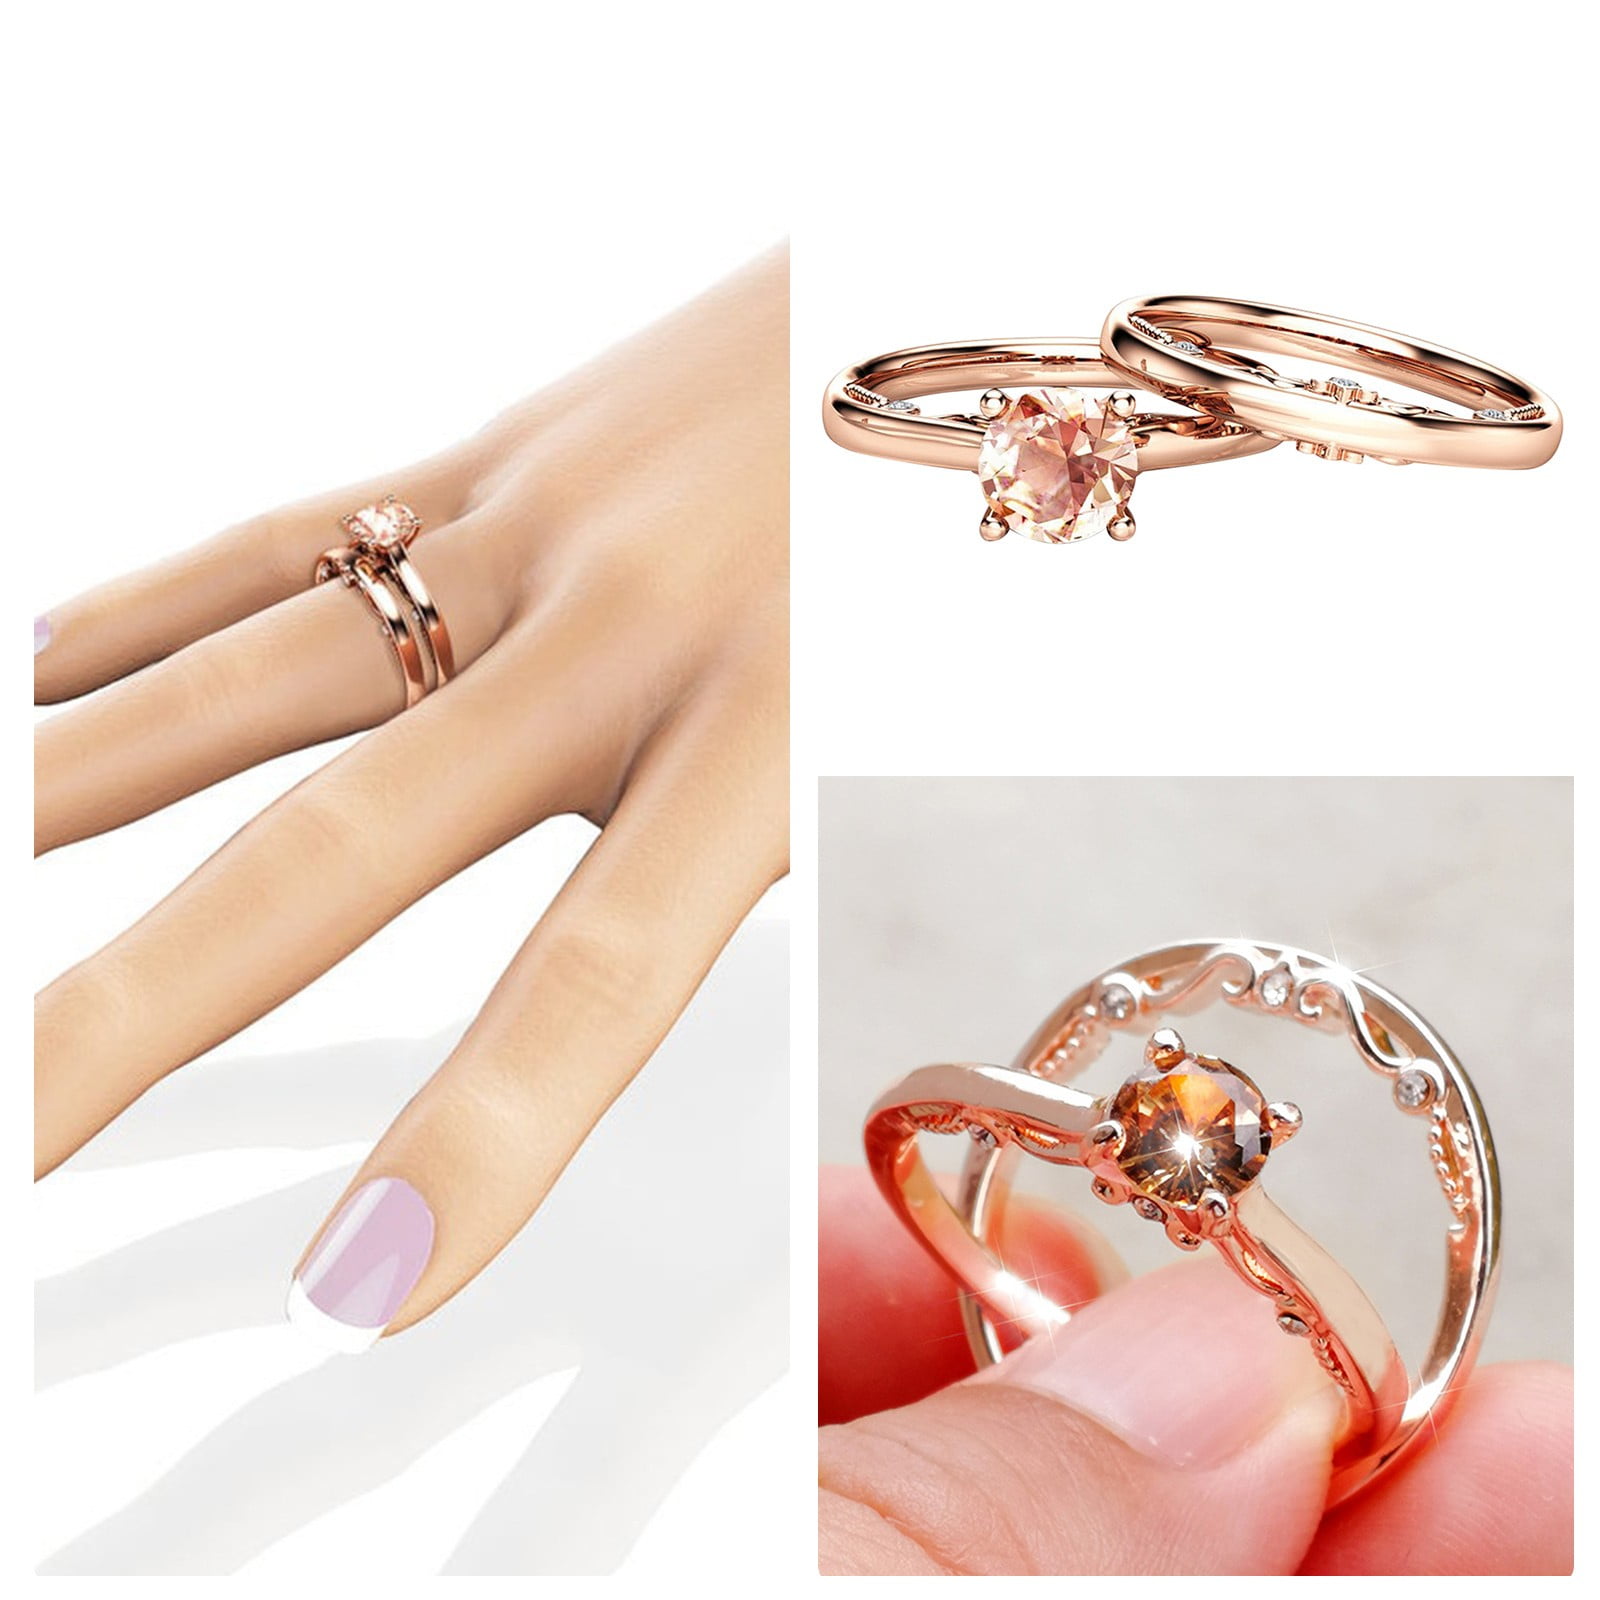 Modern engagement gold ring design ideas for girls 2021 - YouTube